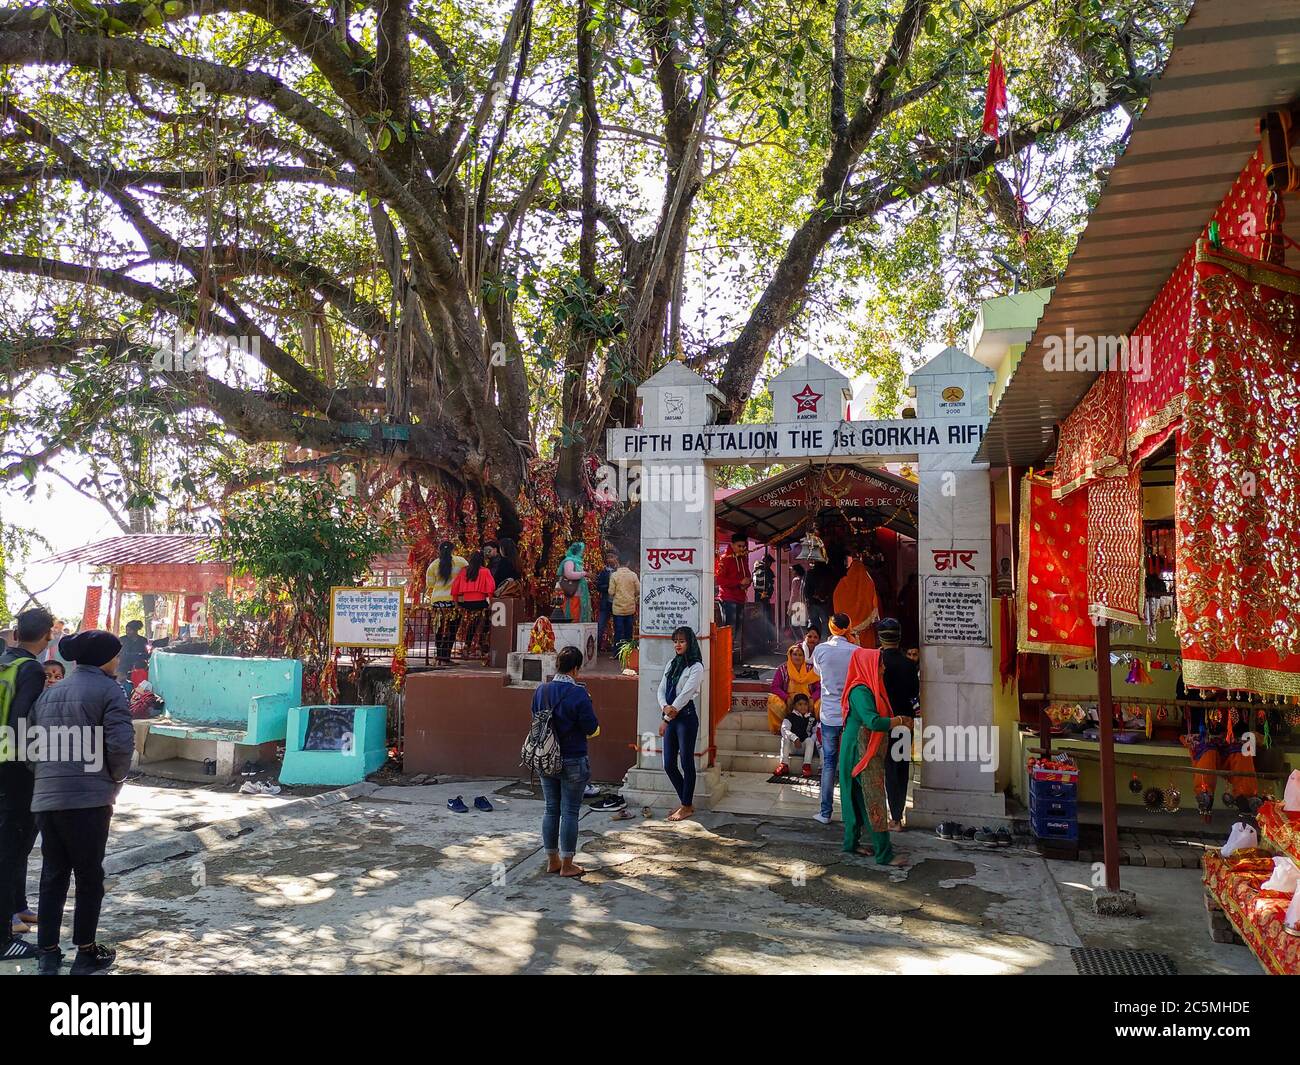 EDITORIALE DATATO:19 gennaio 2020 LOCATION: Dehradun Uttarakhand India. Un colpo di turista che visita il tempio. Foto Stock